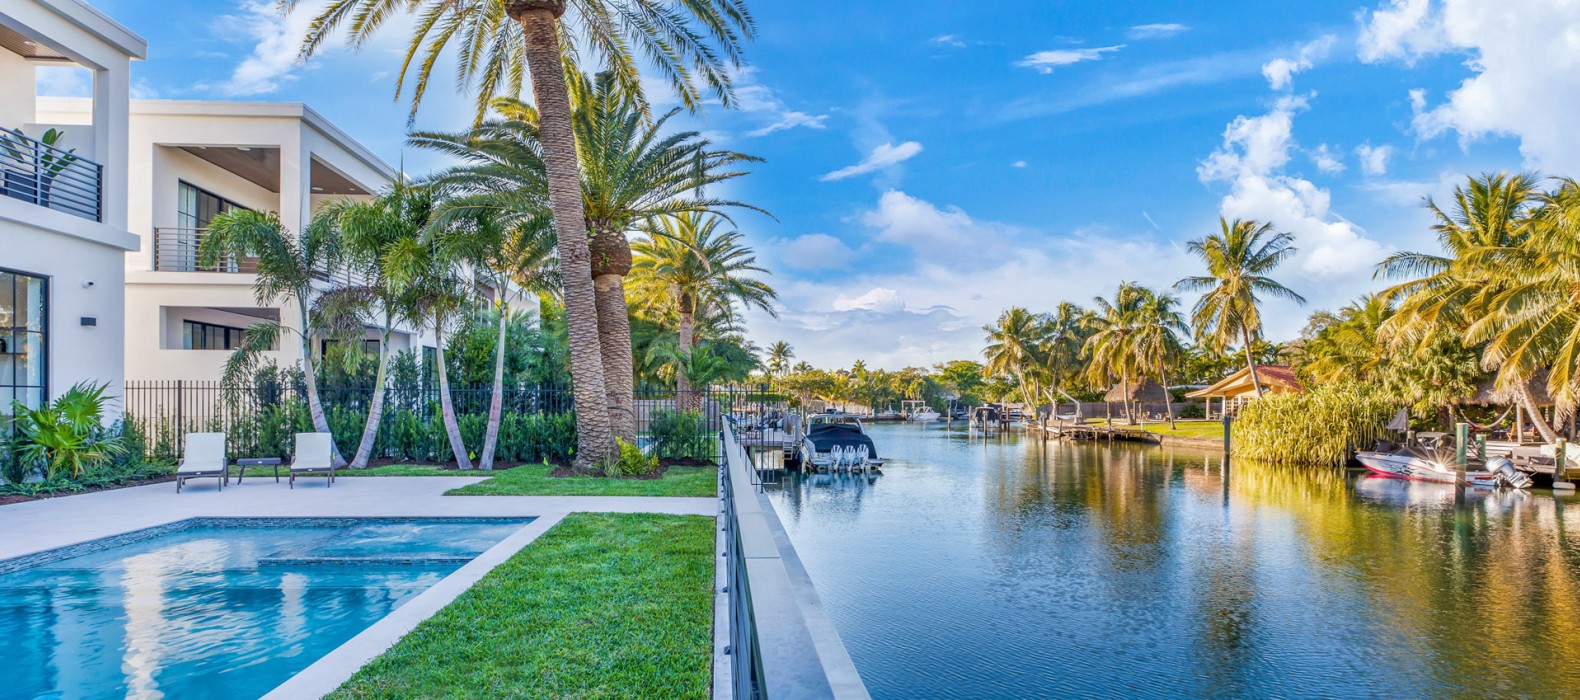 River view of Villa Button in Miami